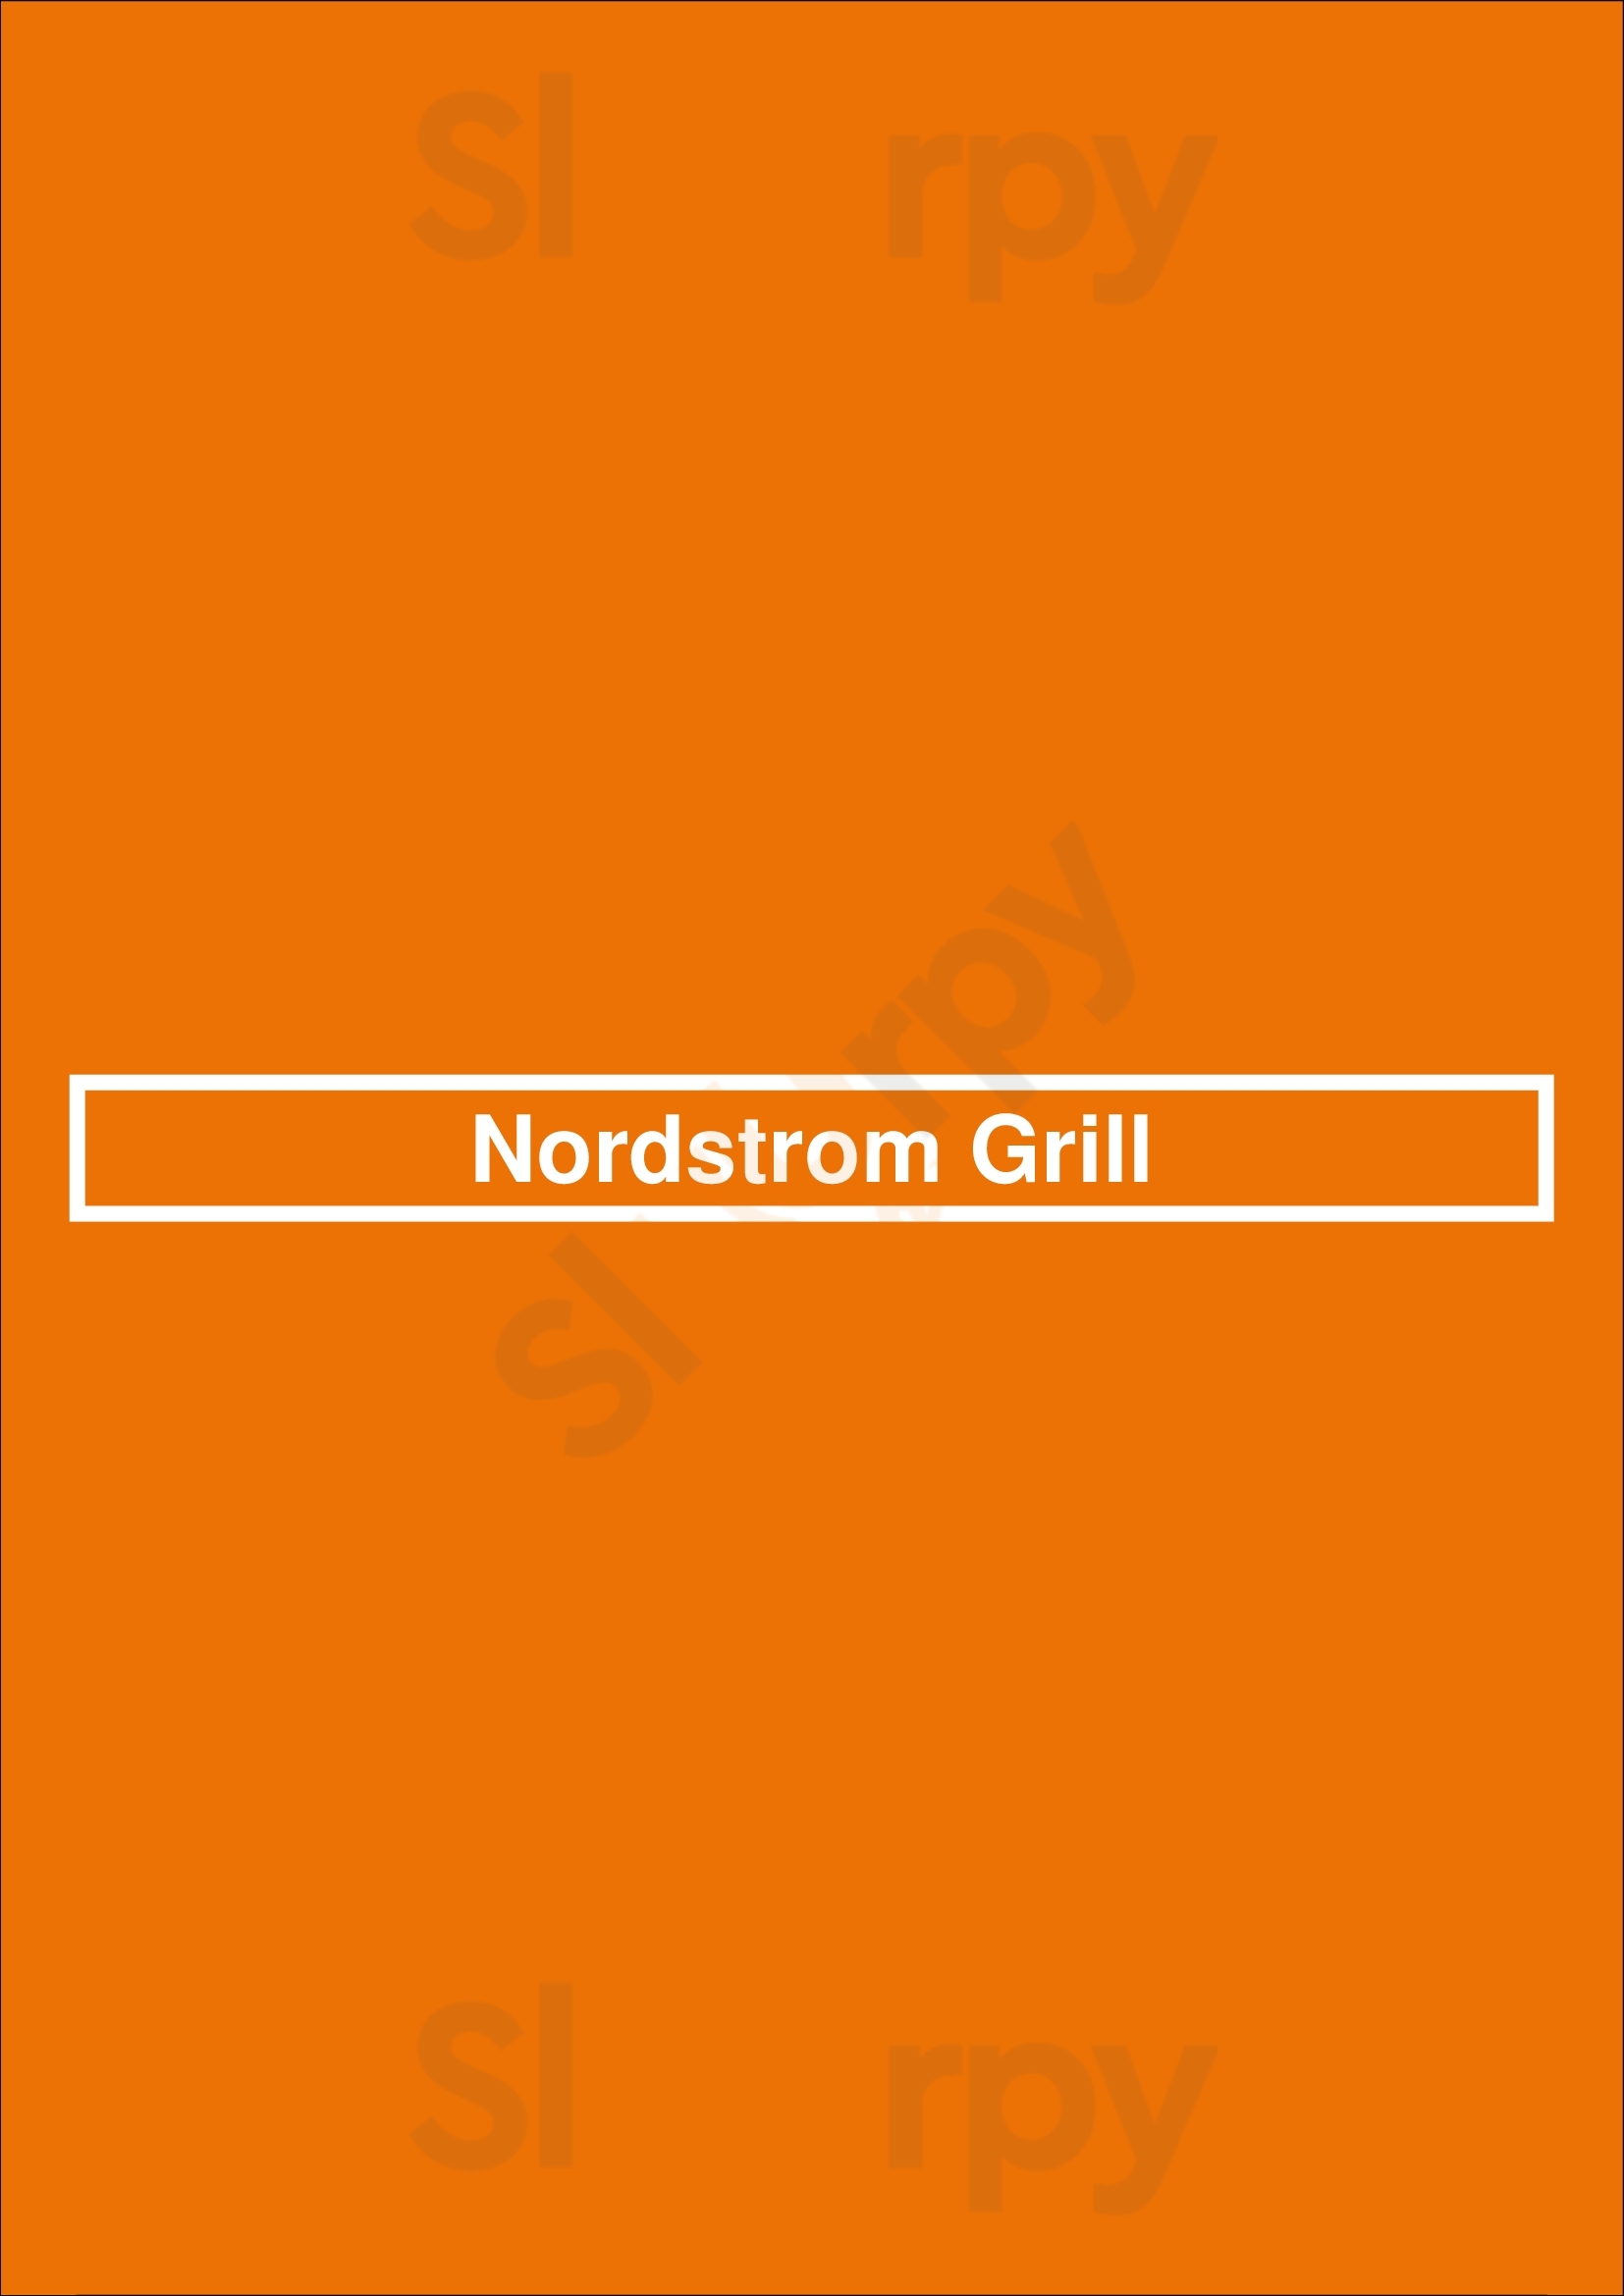 Nordstrom Grill Nashville Menu - 1